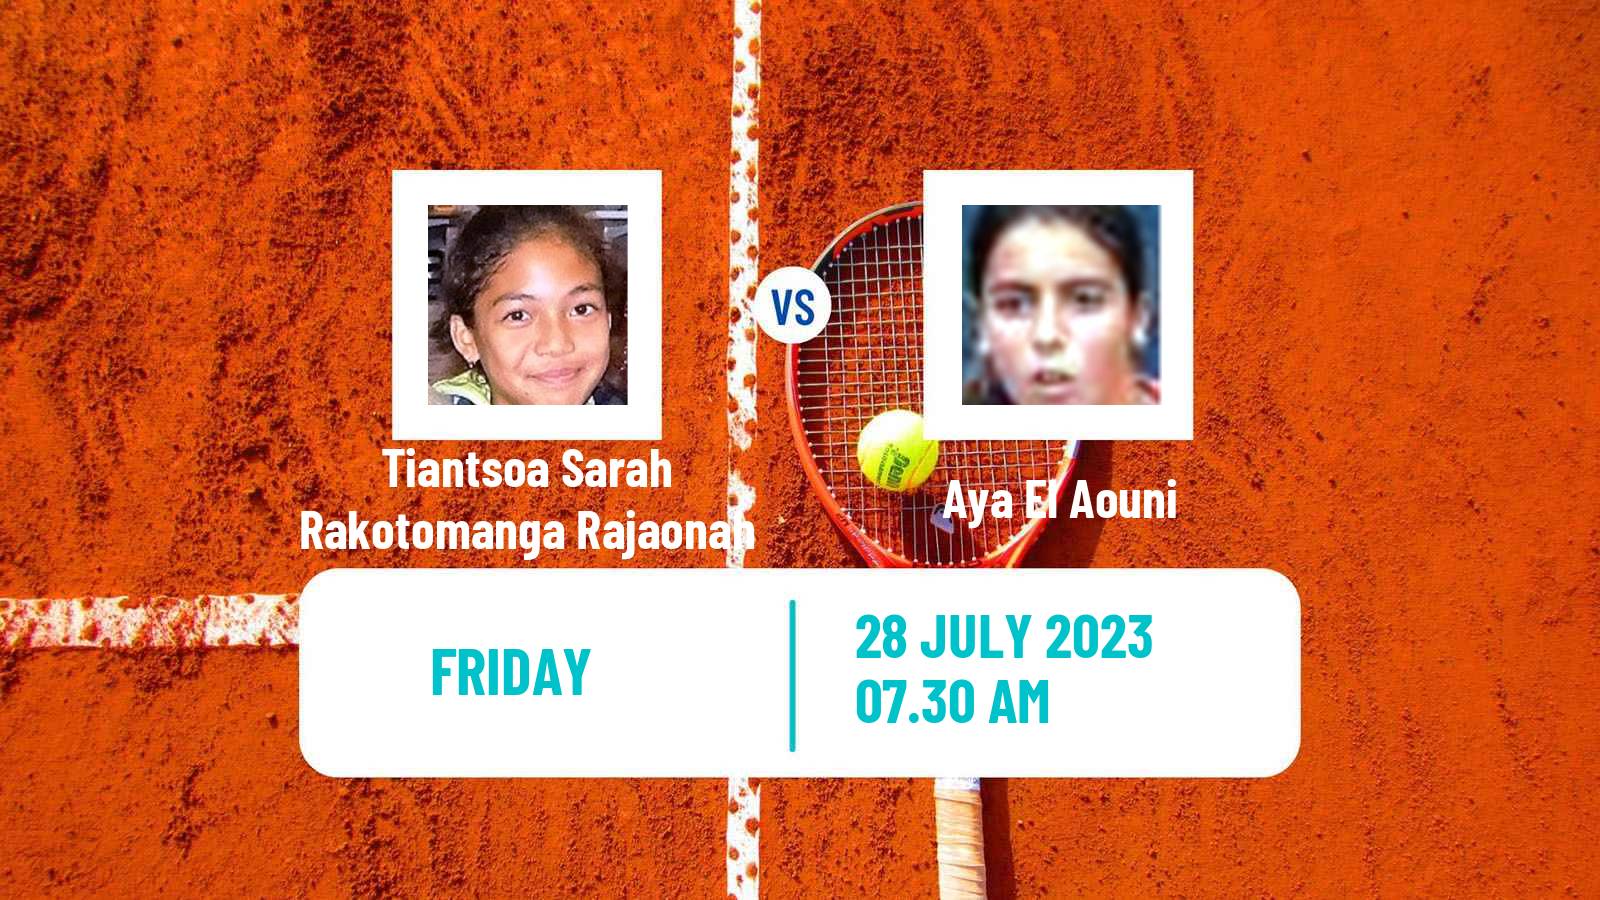 Tennis ITF W15 Casablanca 2 Women Tiantsoa Sarah Rakotomanga Rajaonah - Aya El Aouni